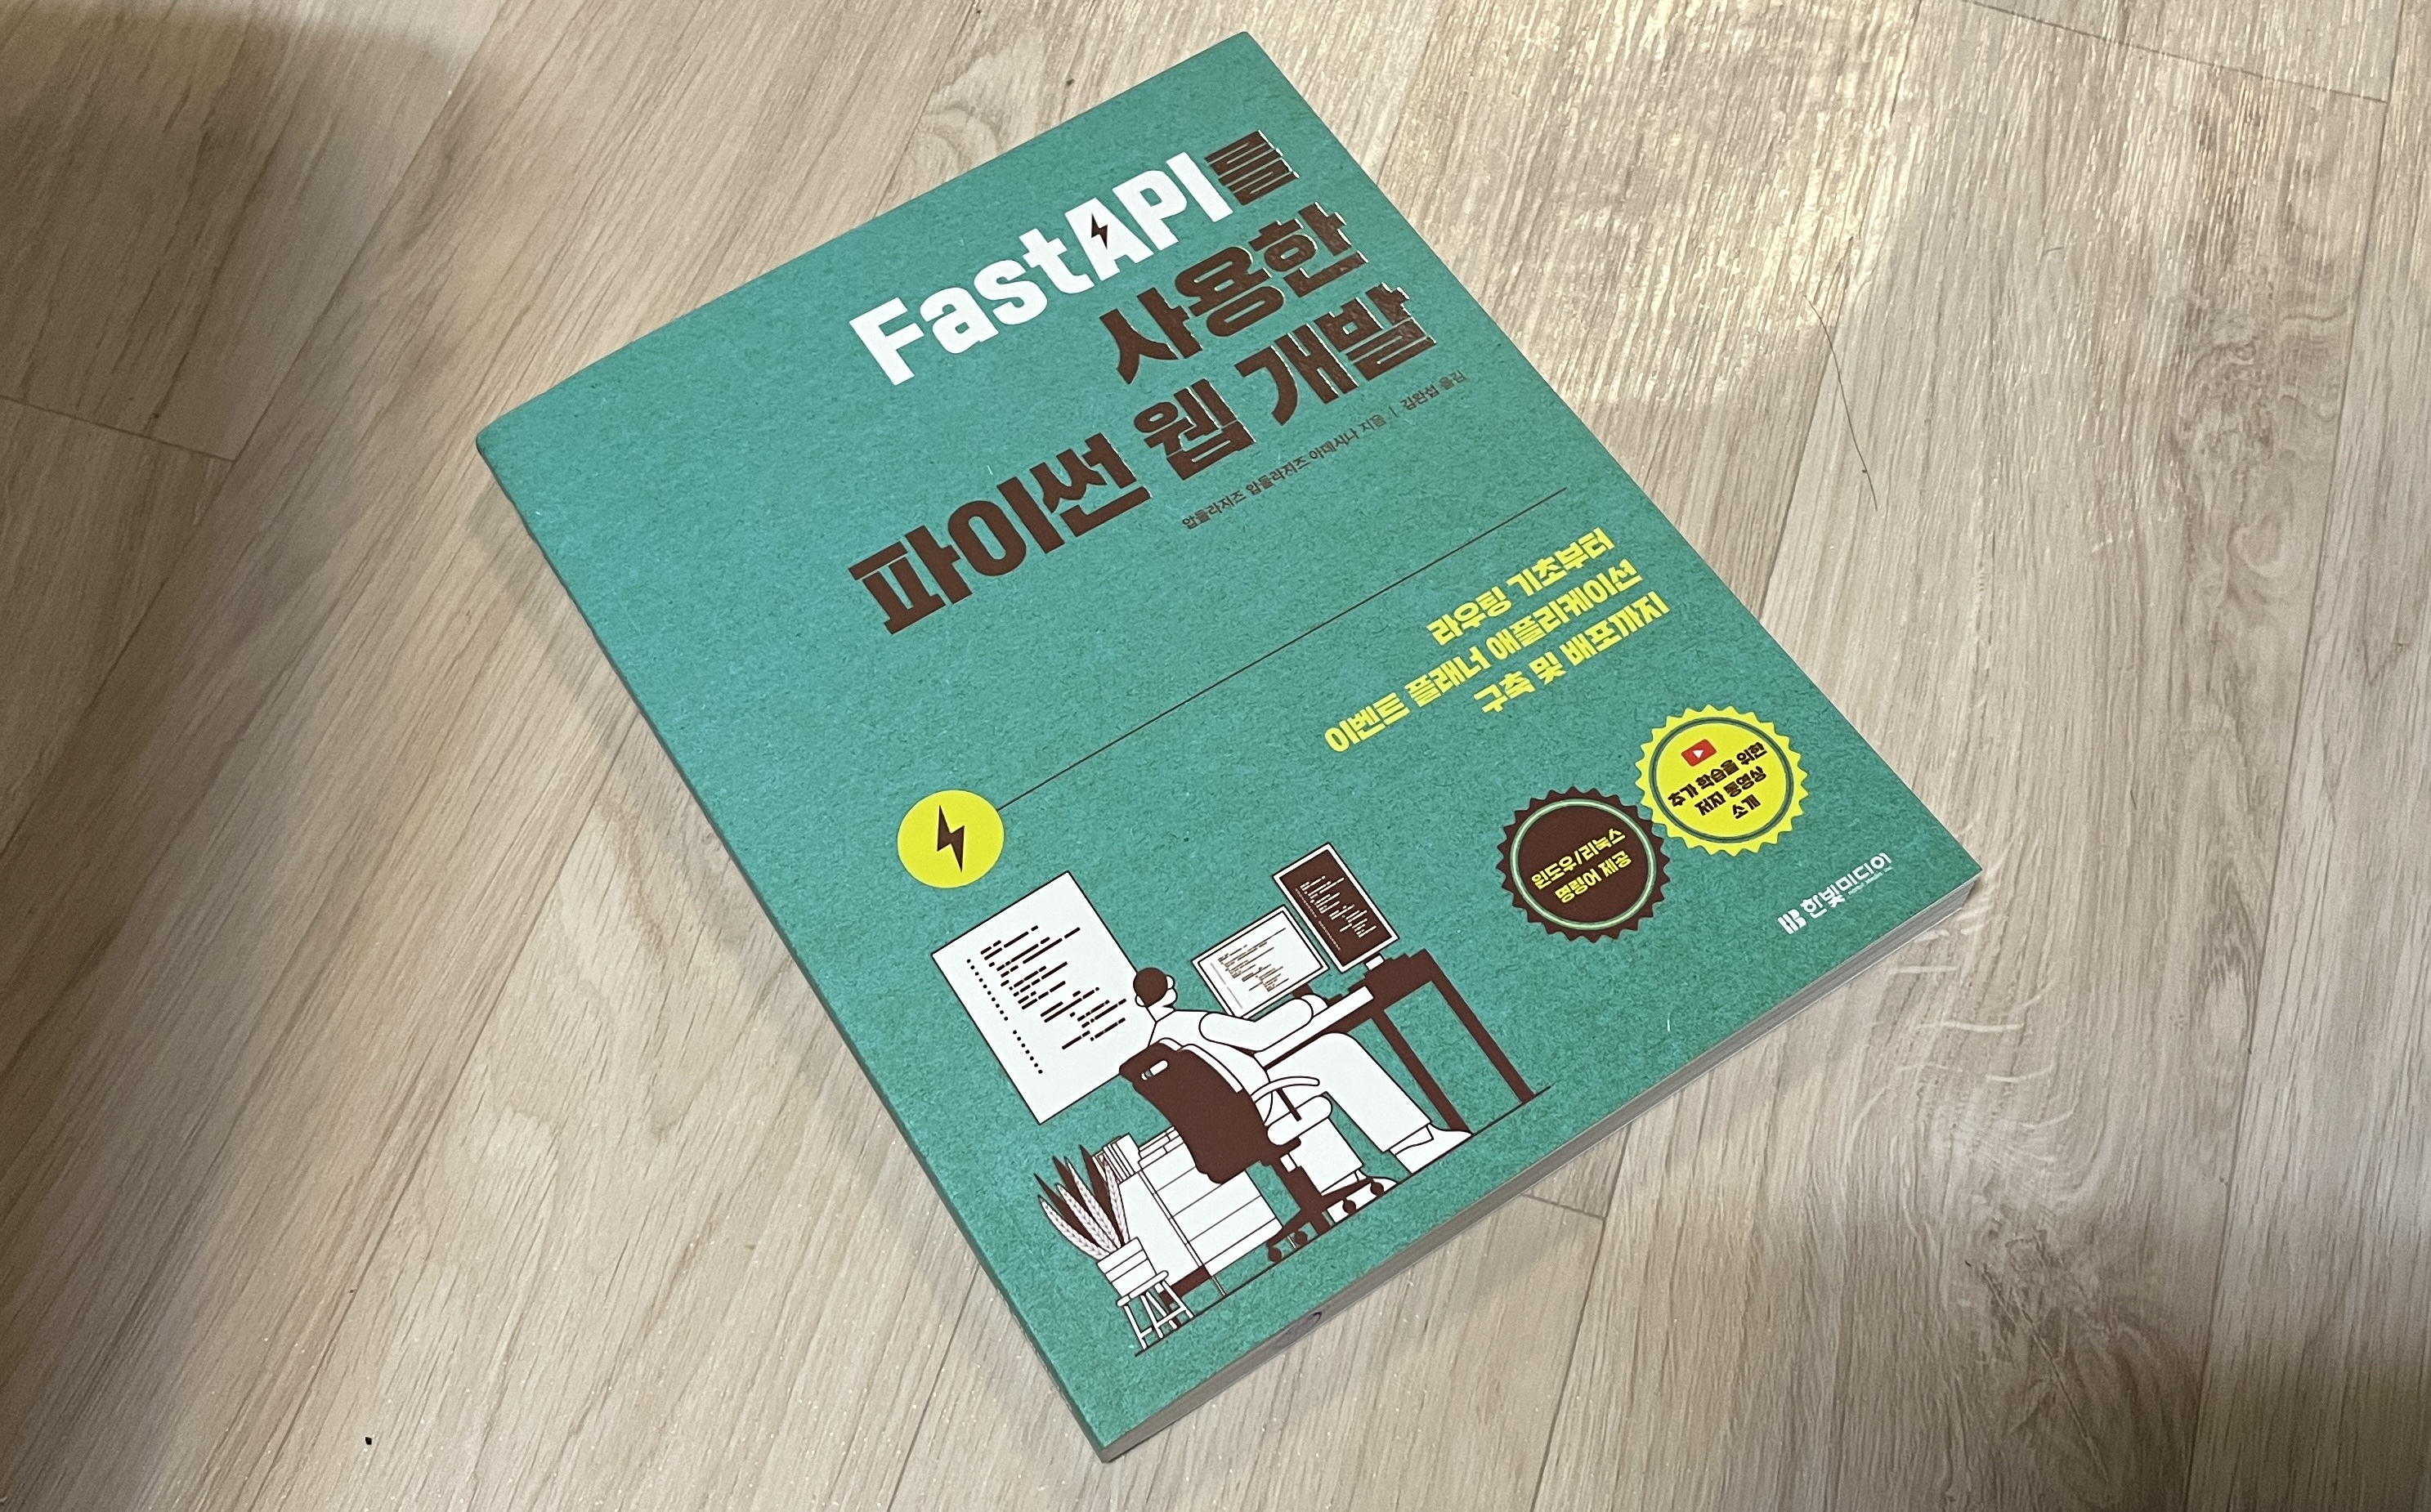 FastAPI를 사용한 파이썬 웹개발 (저자: 압둘라지즈 압둘라지즈 아데시나)